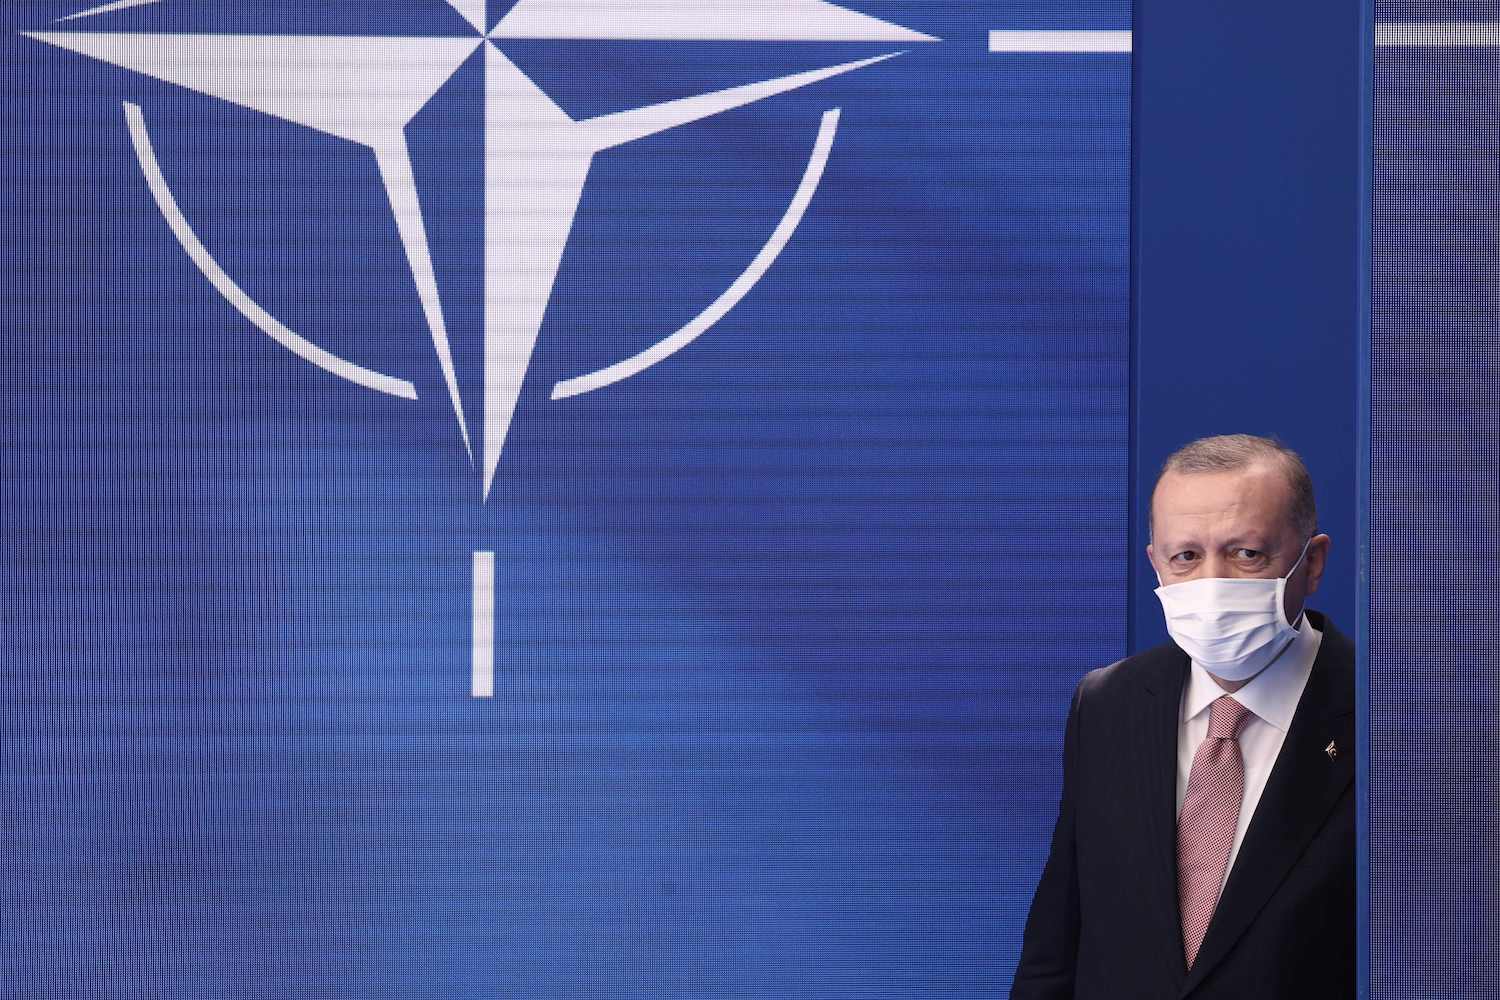 Зоран Чворовић: Ердоган вреба прилику да удари на Русију